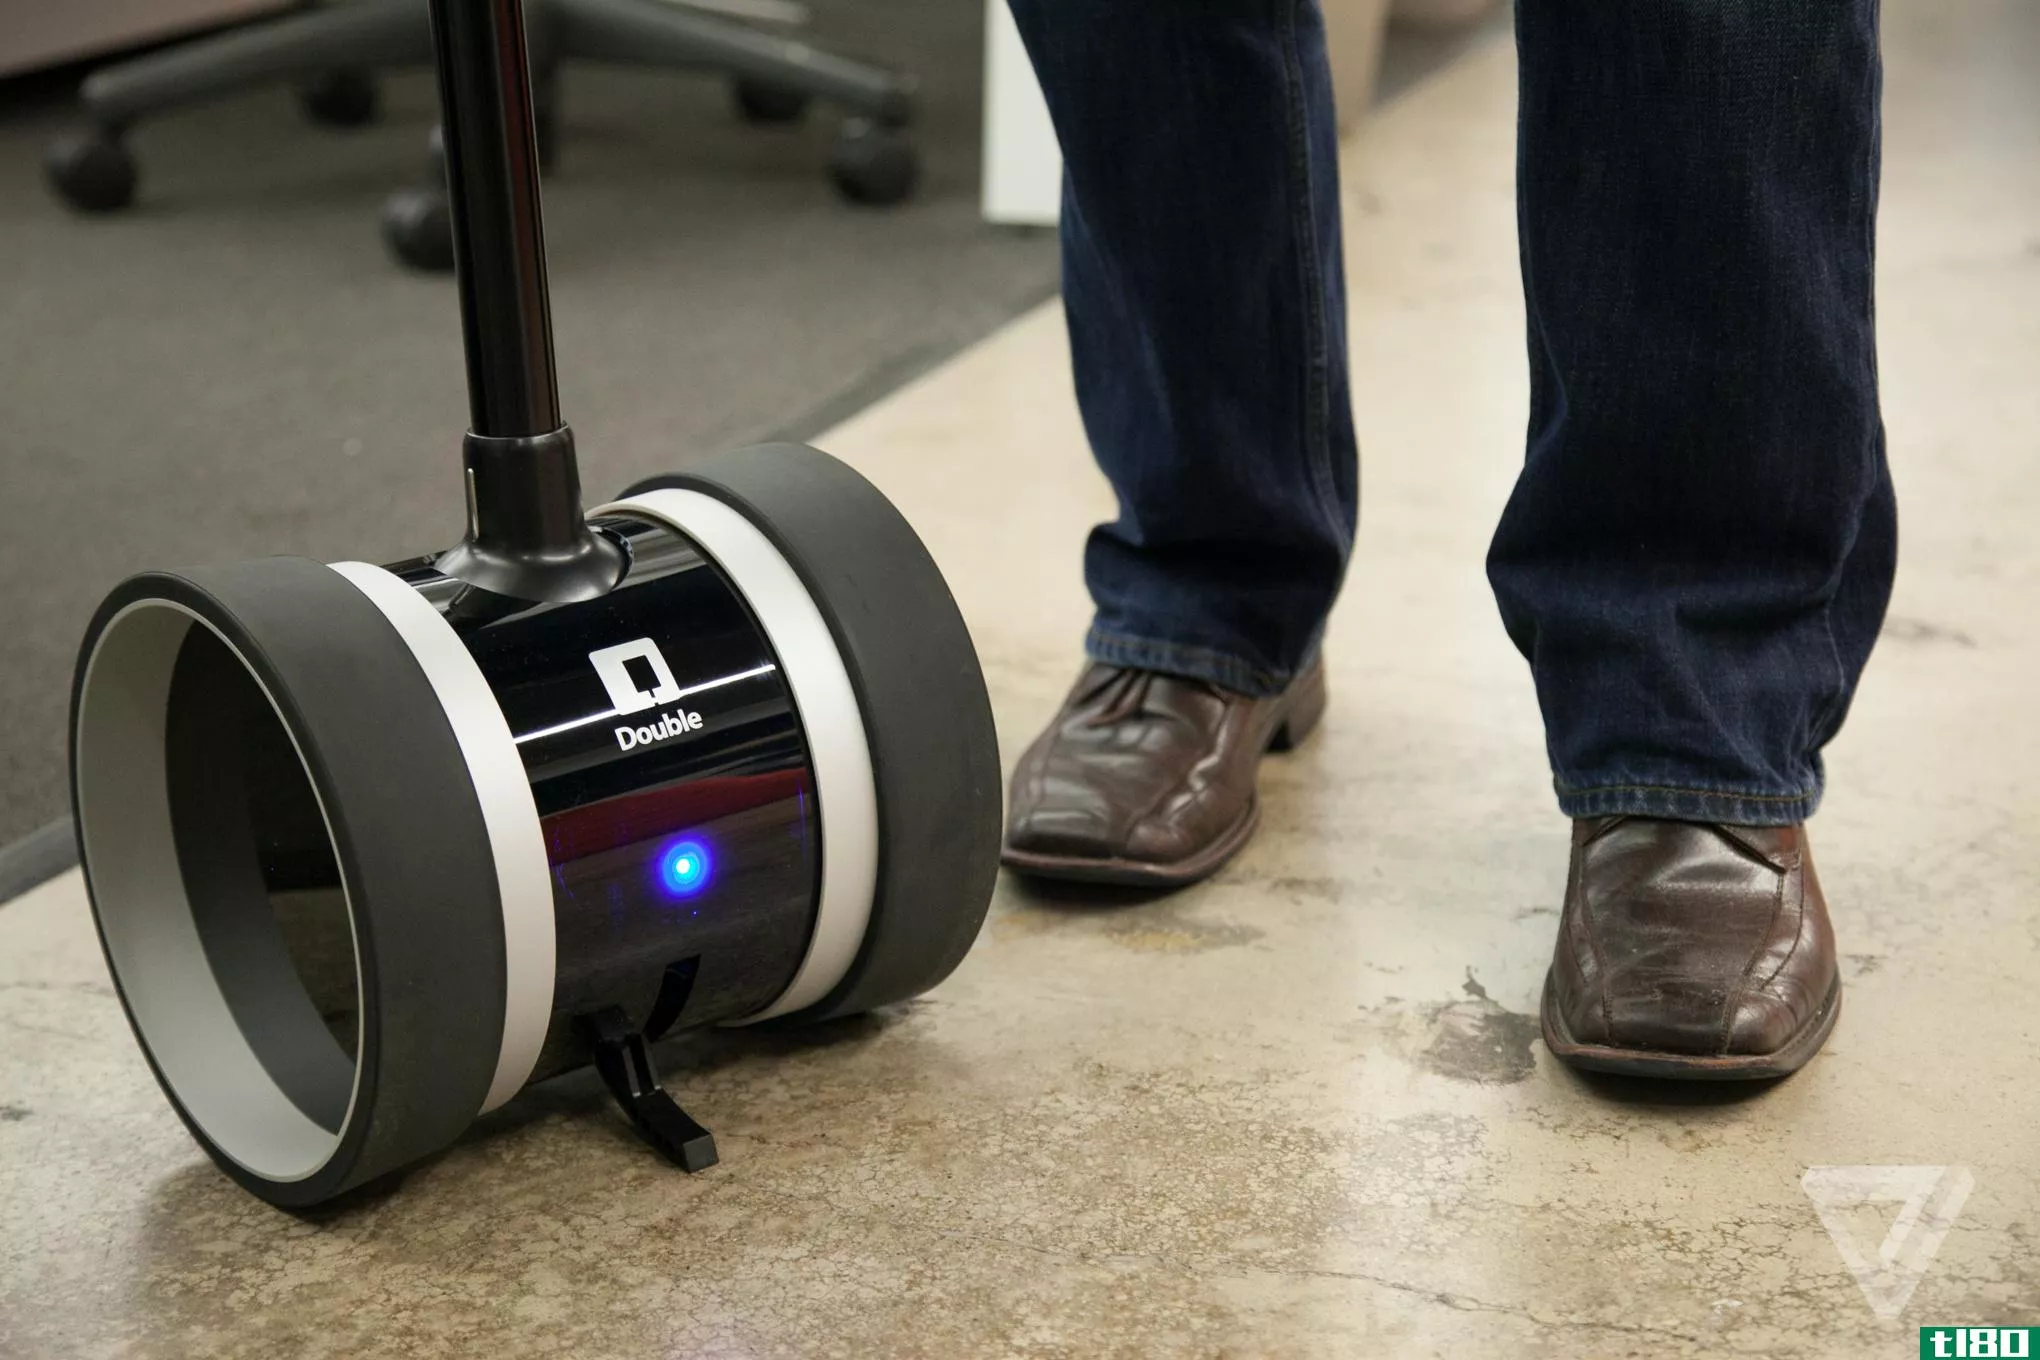 双机器人技术公司的新型临场感机器人带来了更高的速度、稳定性和视觉效果